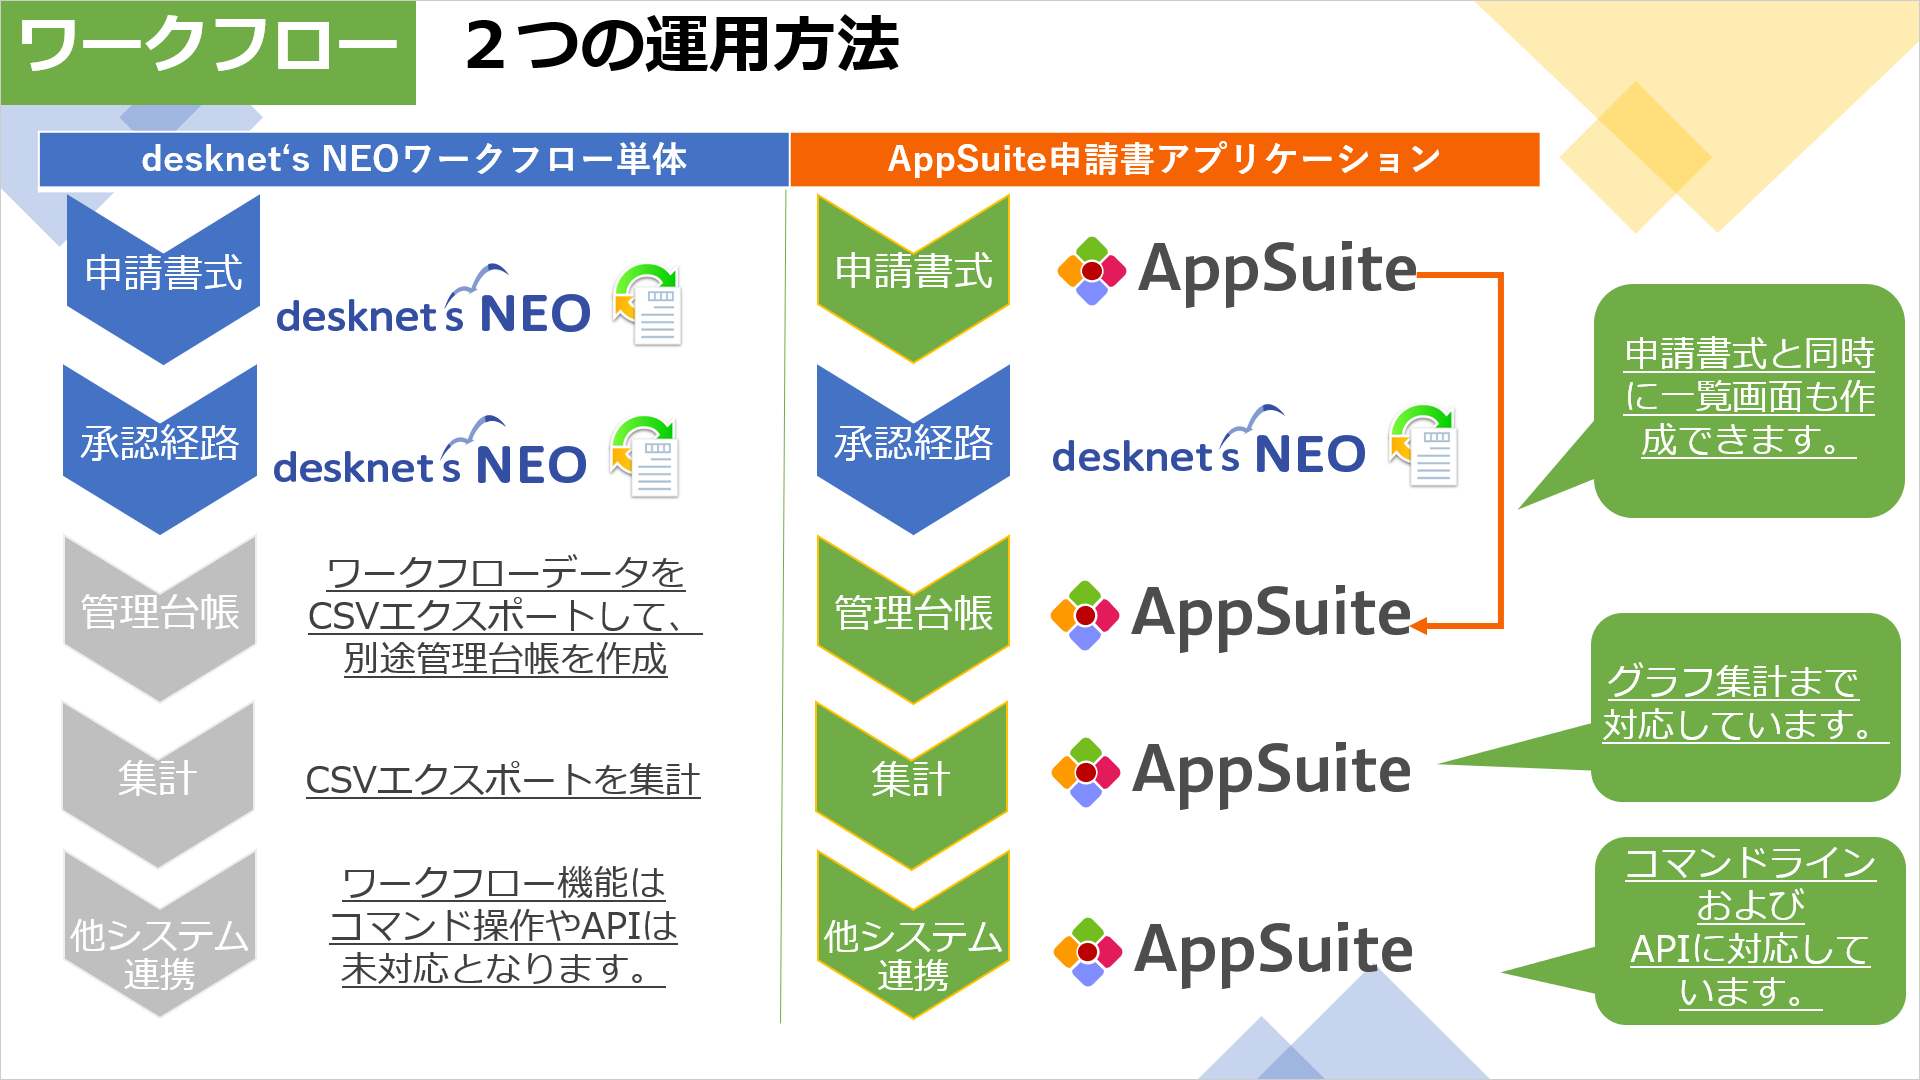 desknet's NEOとAppSuiteの利用ライセンスは、同数がオススメです。